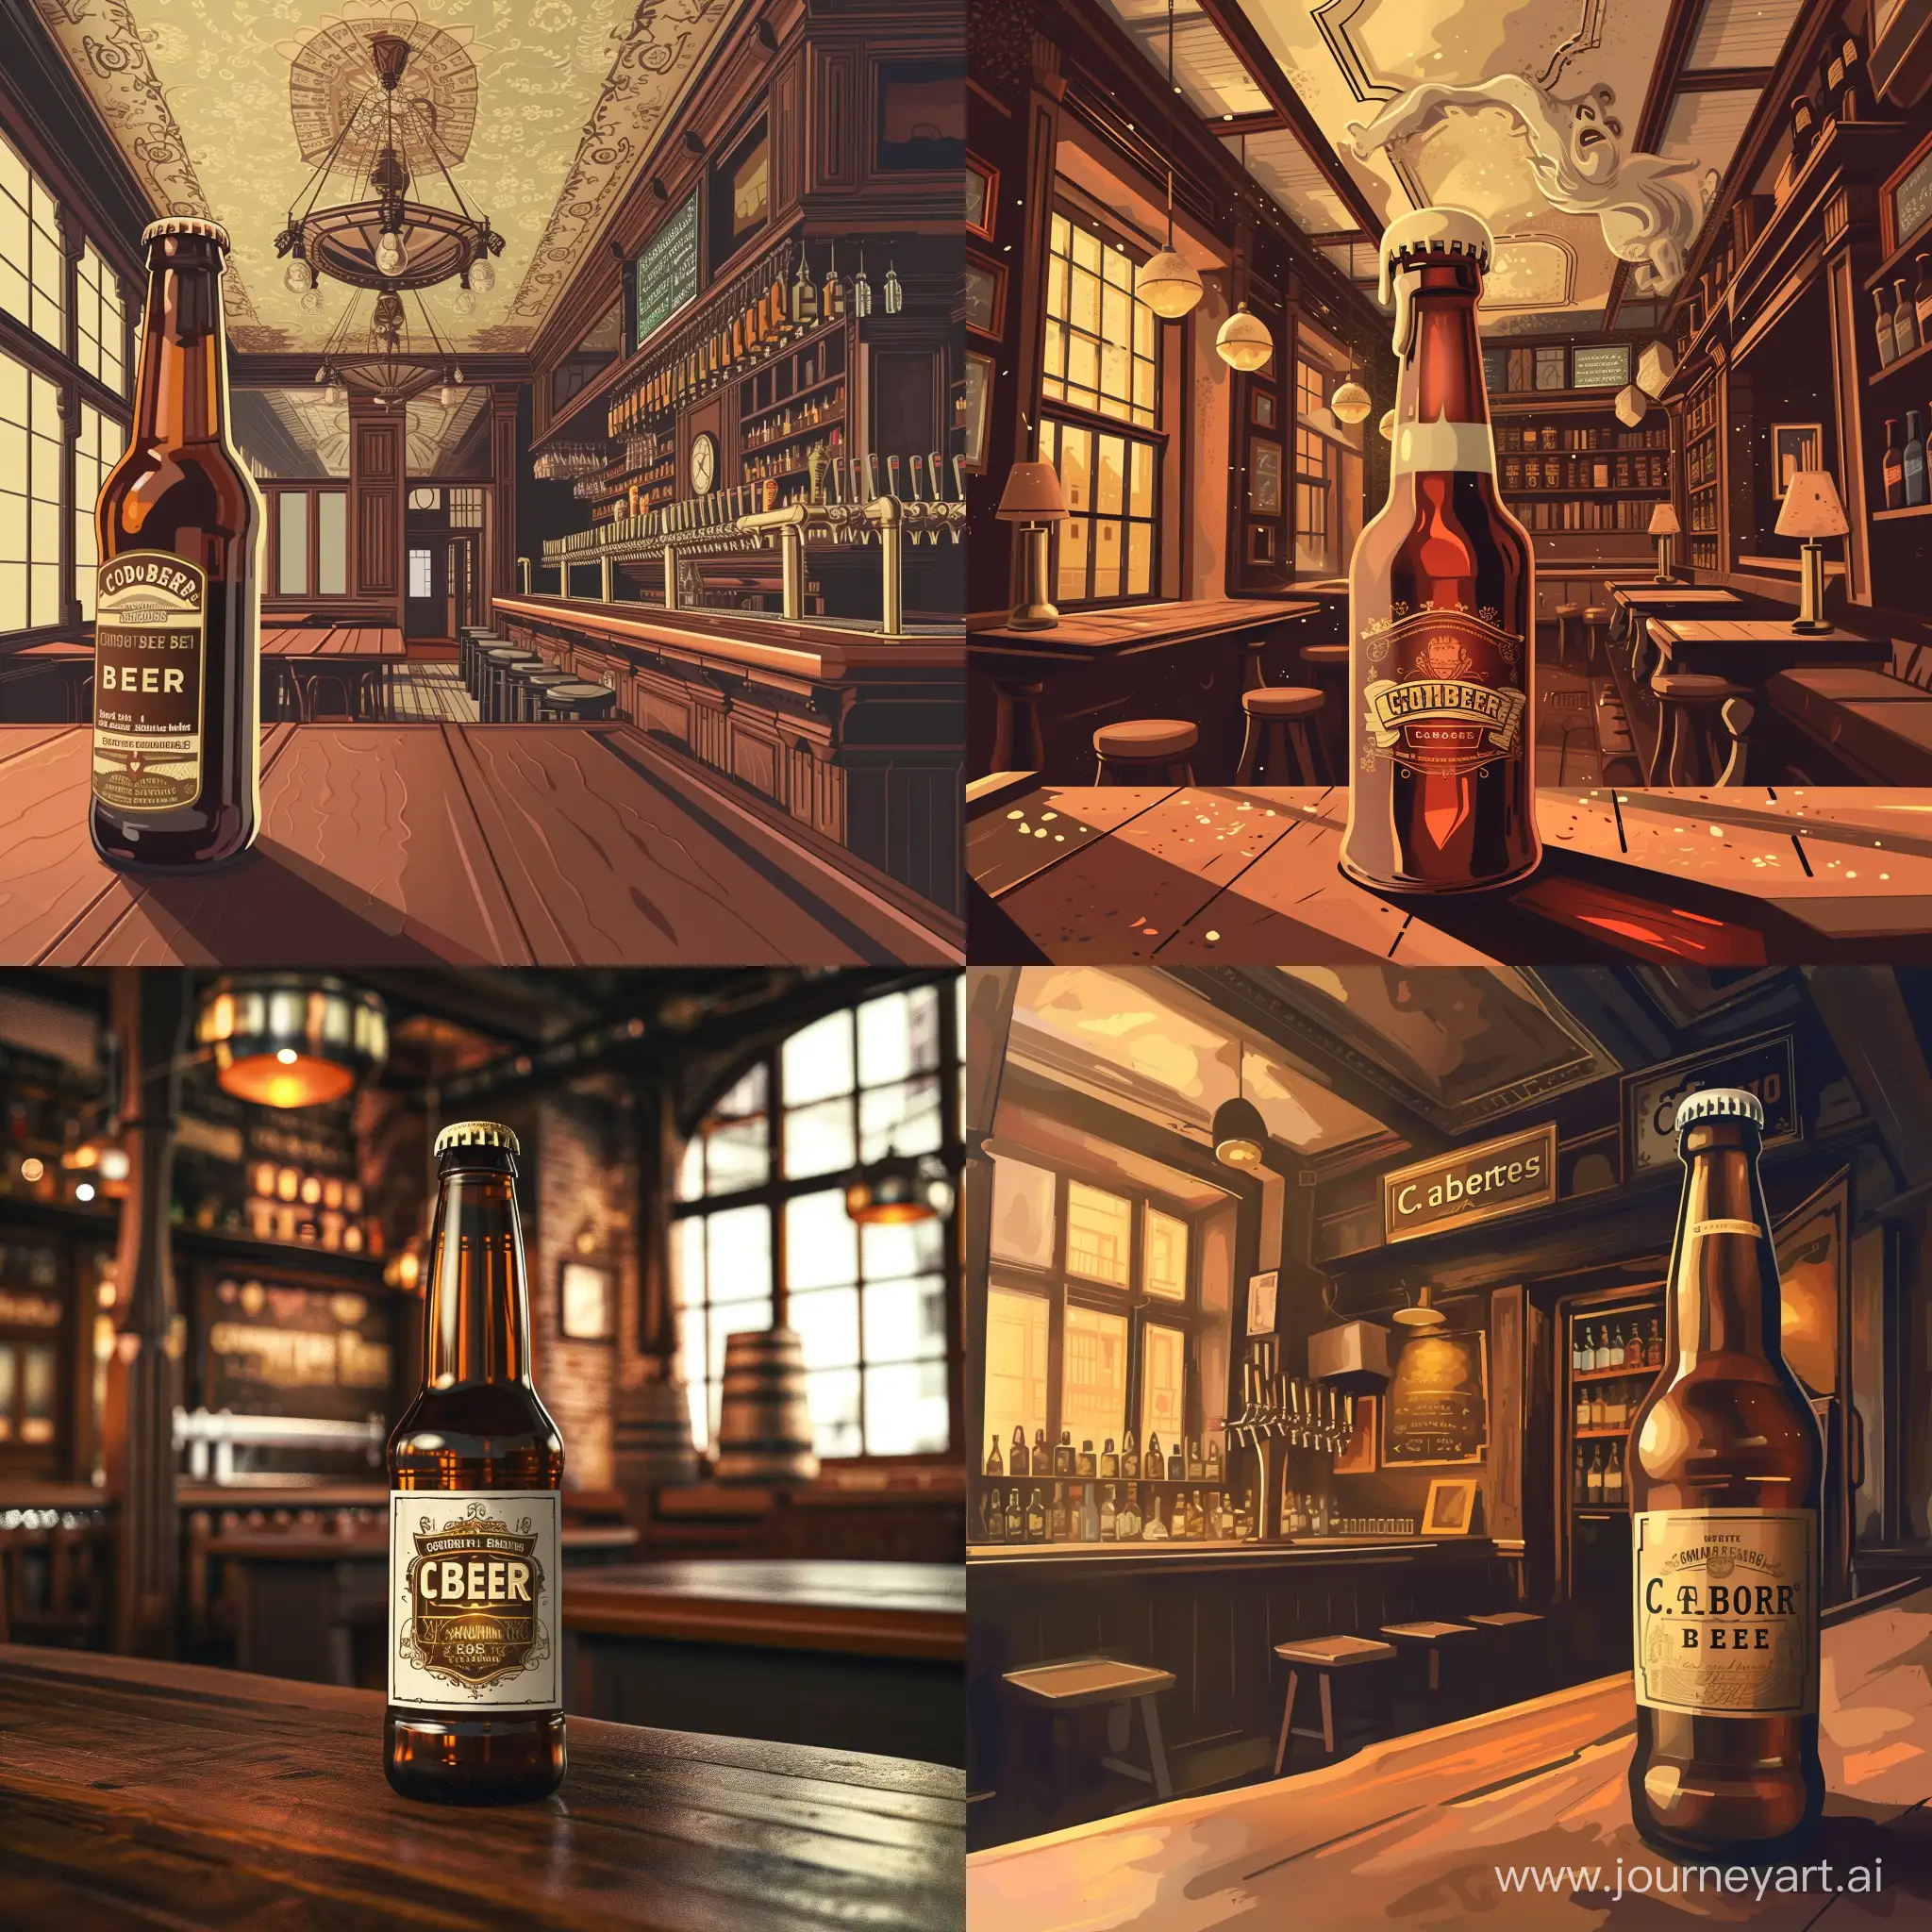 stwórz grafikę która może być etykietą na butelkę piwa, niech zawiera motyw wnętrza starego pubu, niech widnieje na niej nazwa piwa: piwo kolońskie